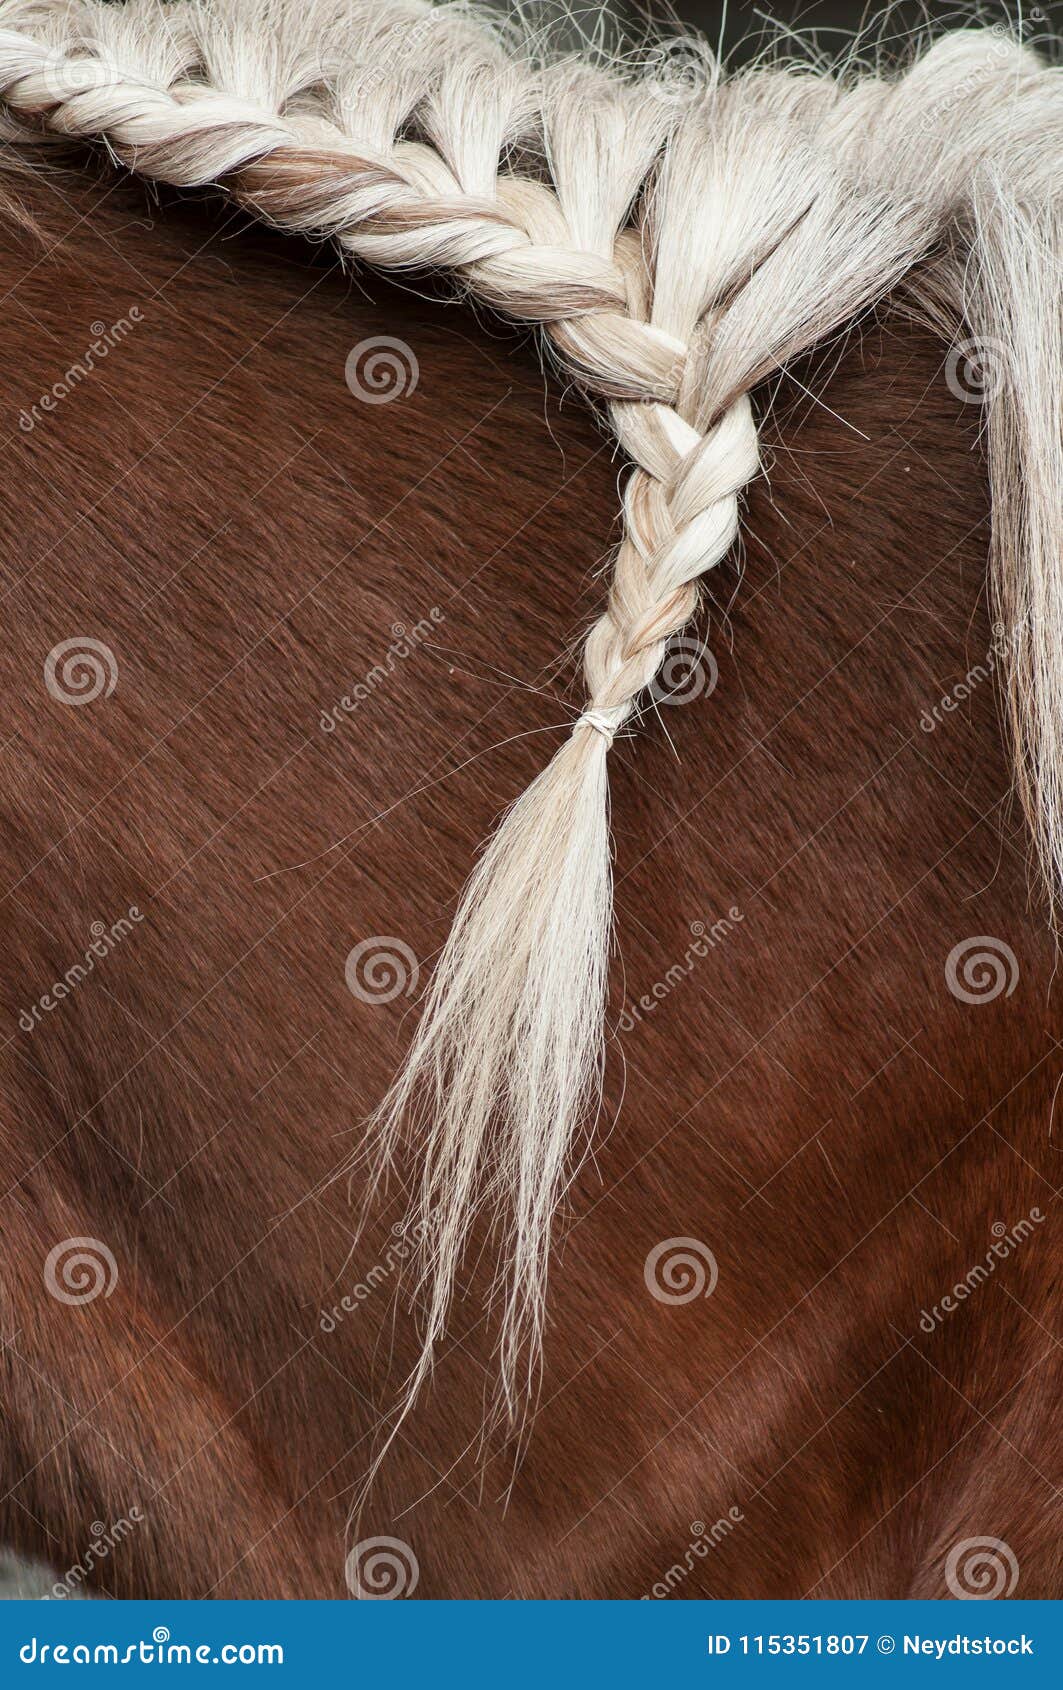 Trança Com Os Cabelos Da Juba De Um Cavalo Imagem de Stock - Imagem de  marrom, mostra: 115351807